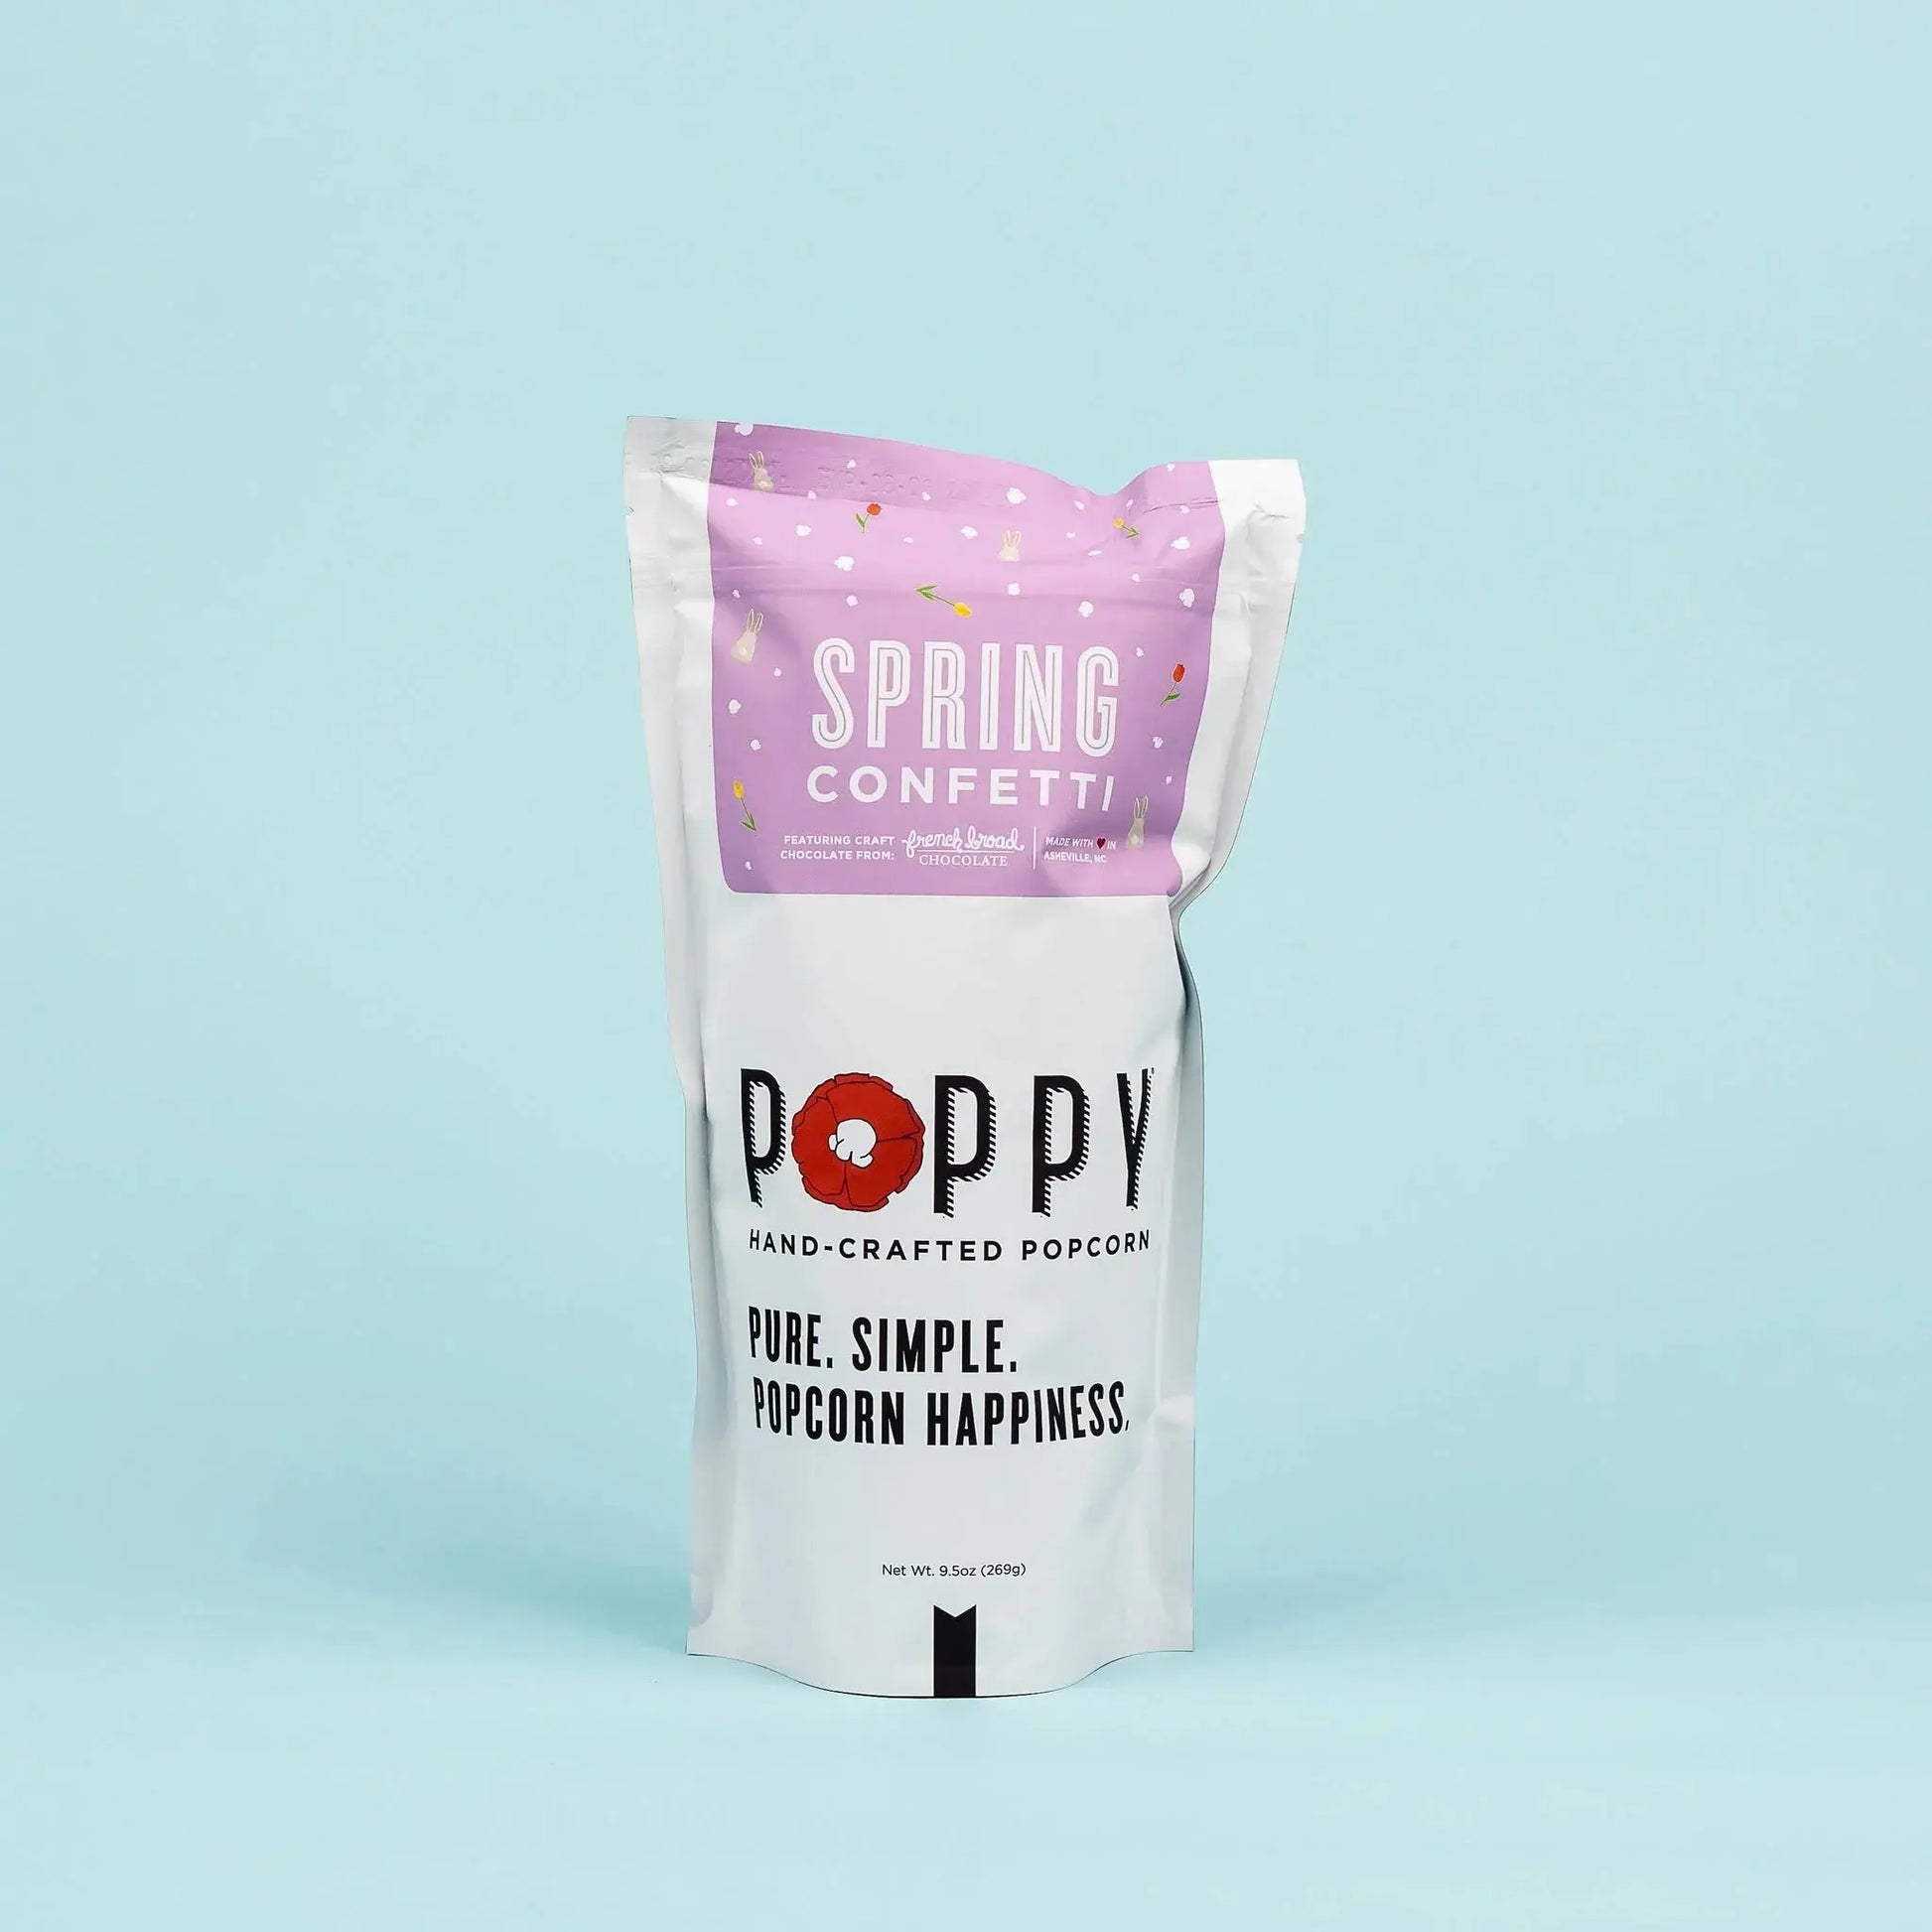 Poppy Mix Spring Confetti Popcorn POPPY